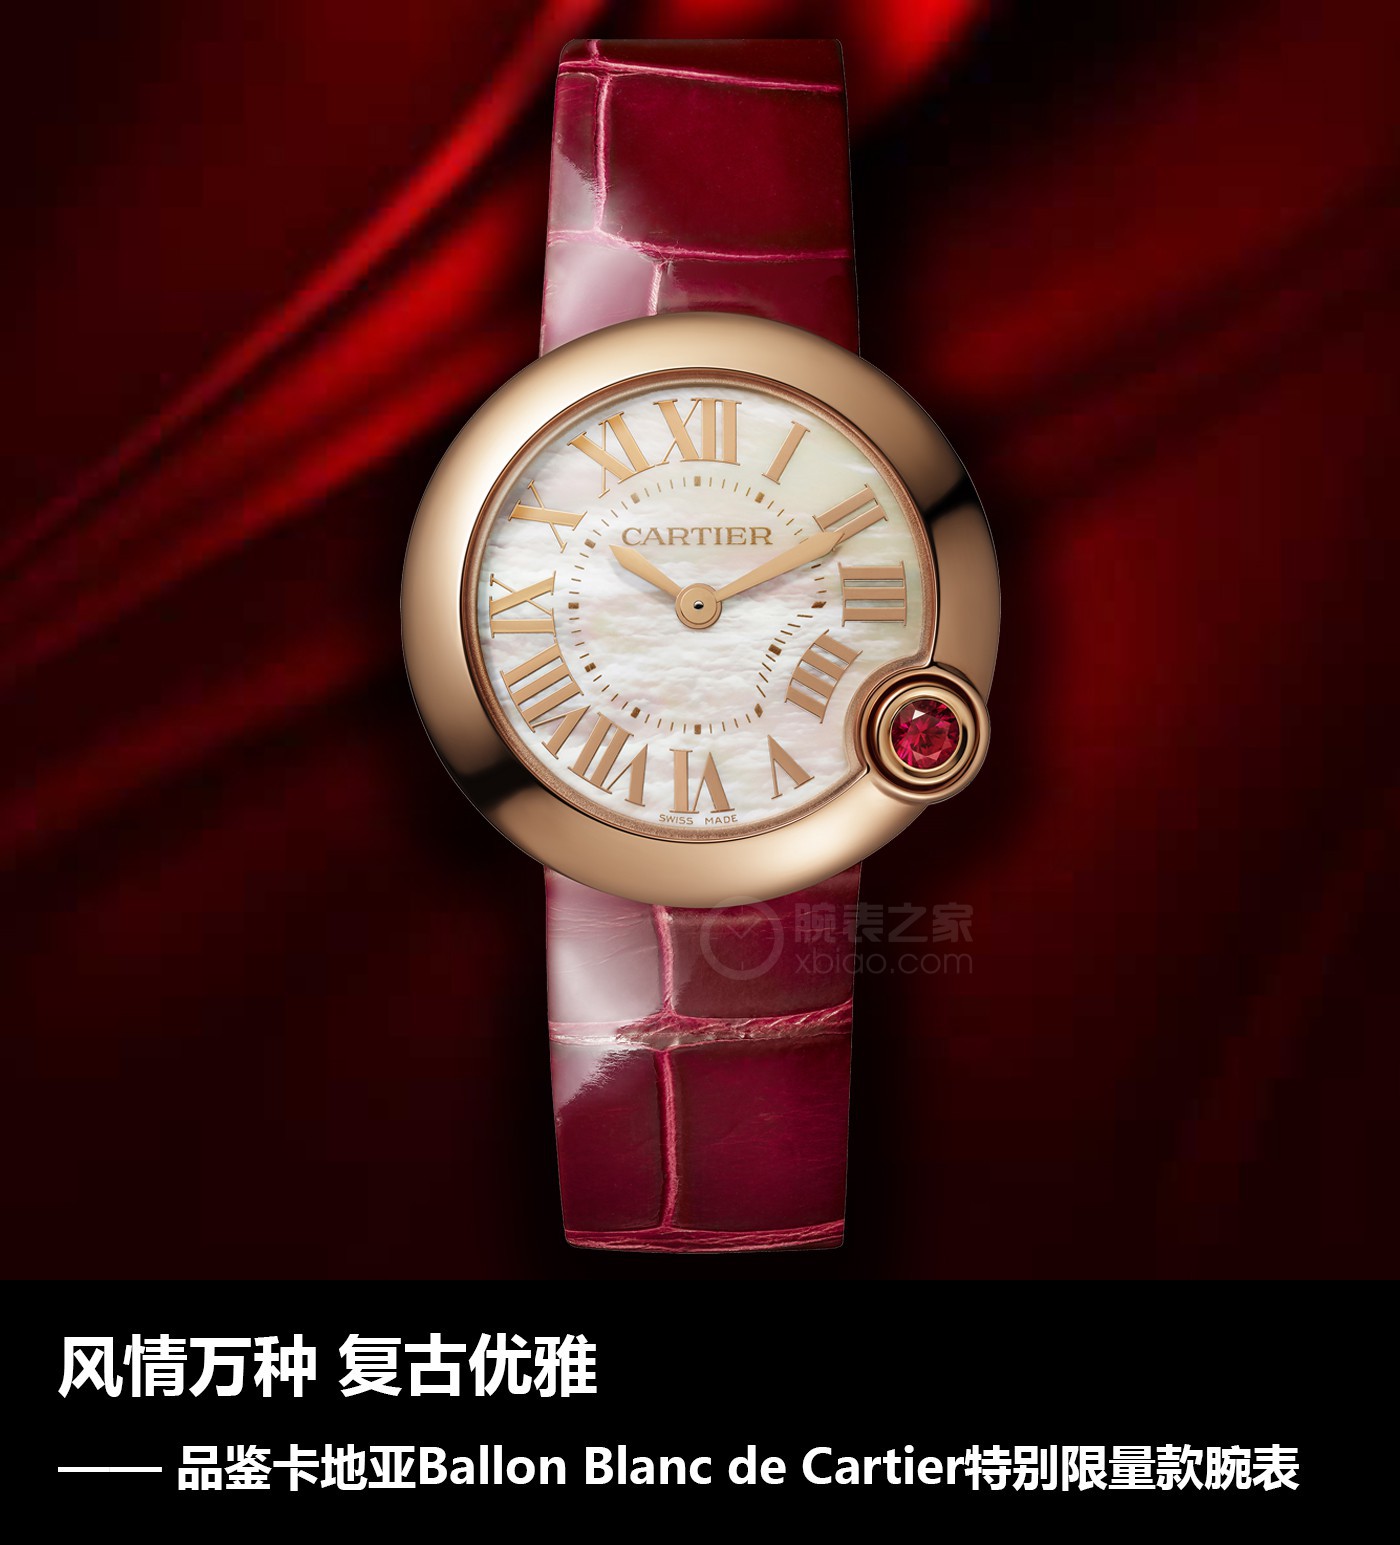 三位一体|万种风情 复古时尚雅致 品评卡地亚Ballon Blanc de Cartier尤其限量款腕表